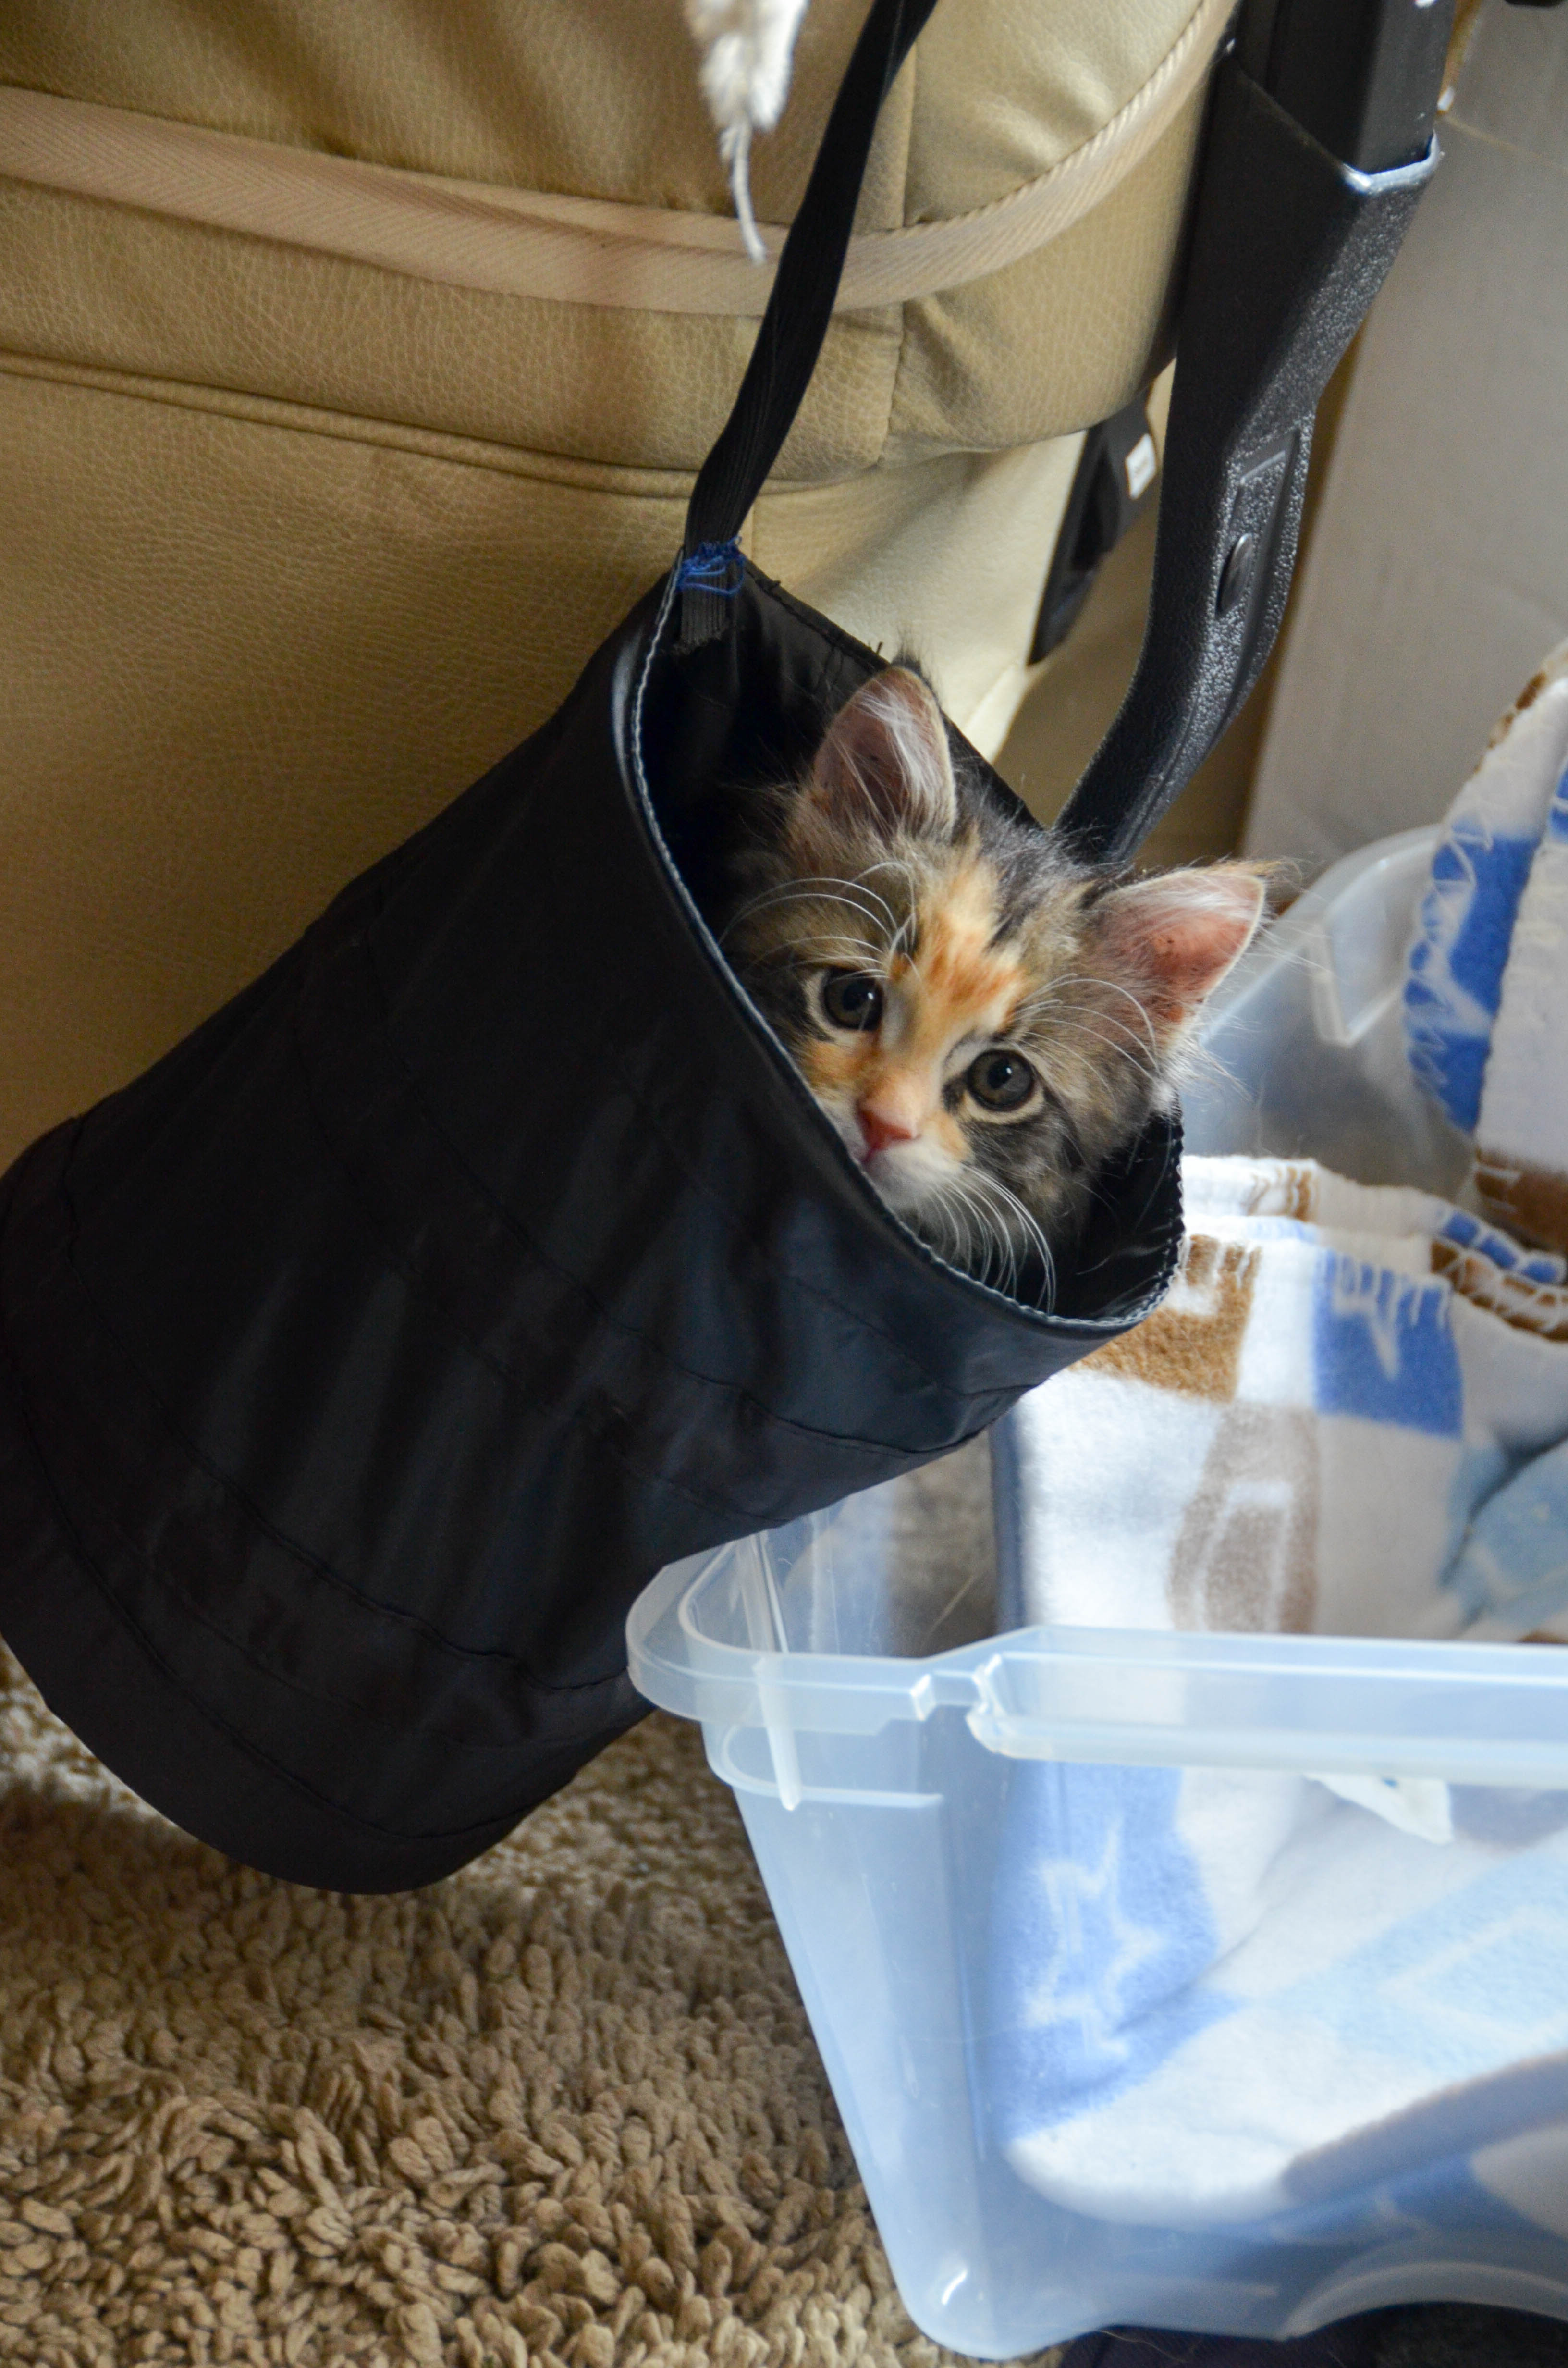 Gypsy in the litter bin.